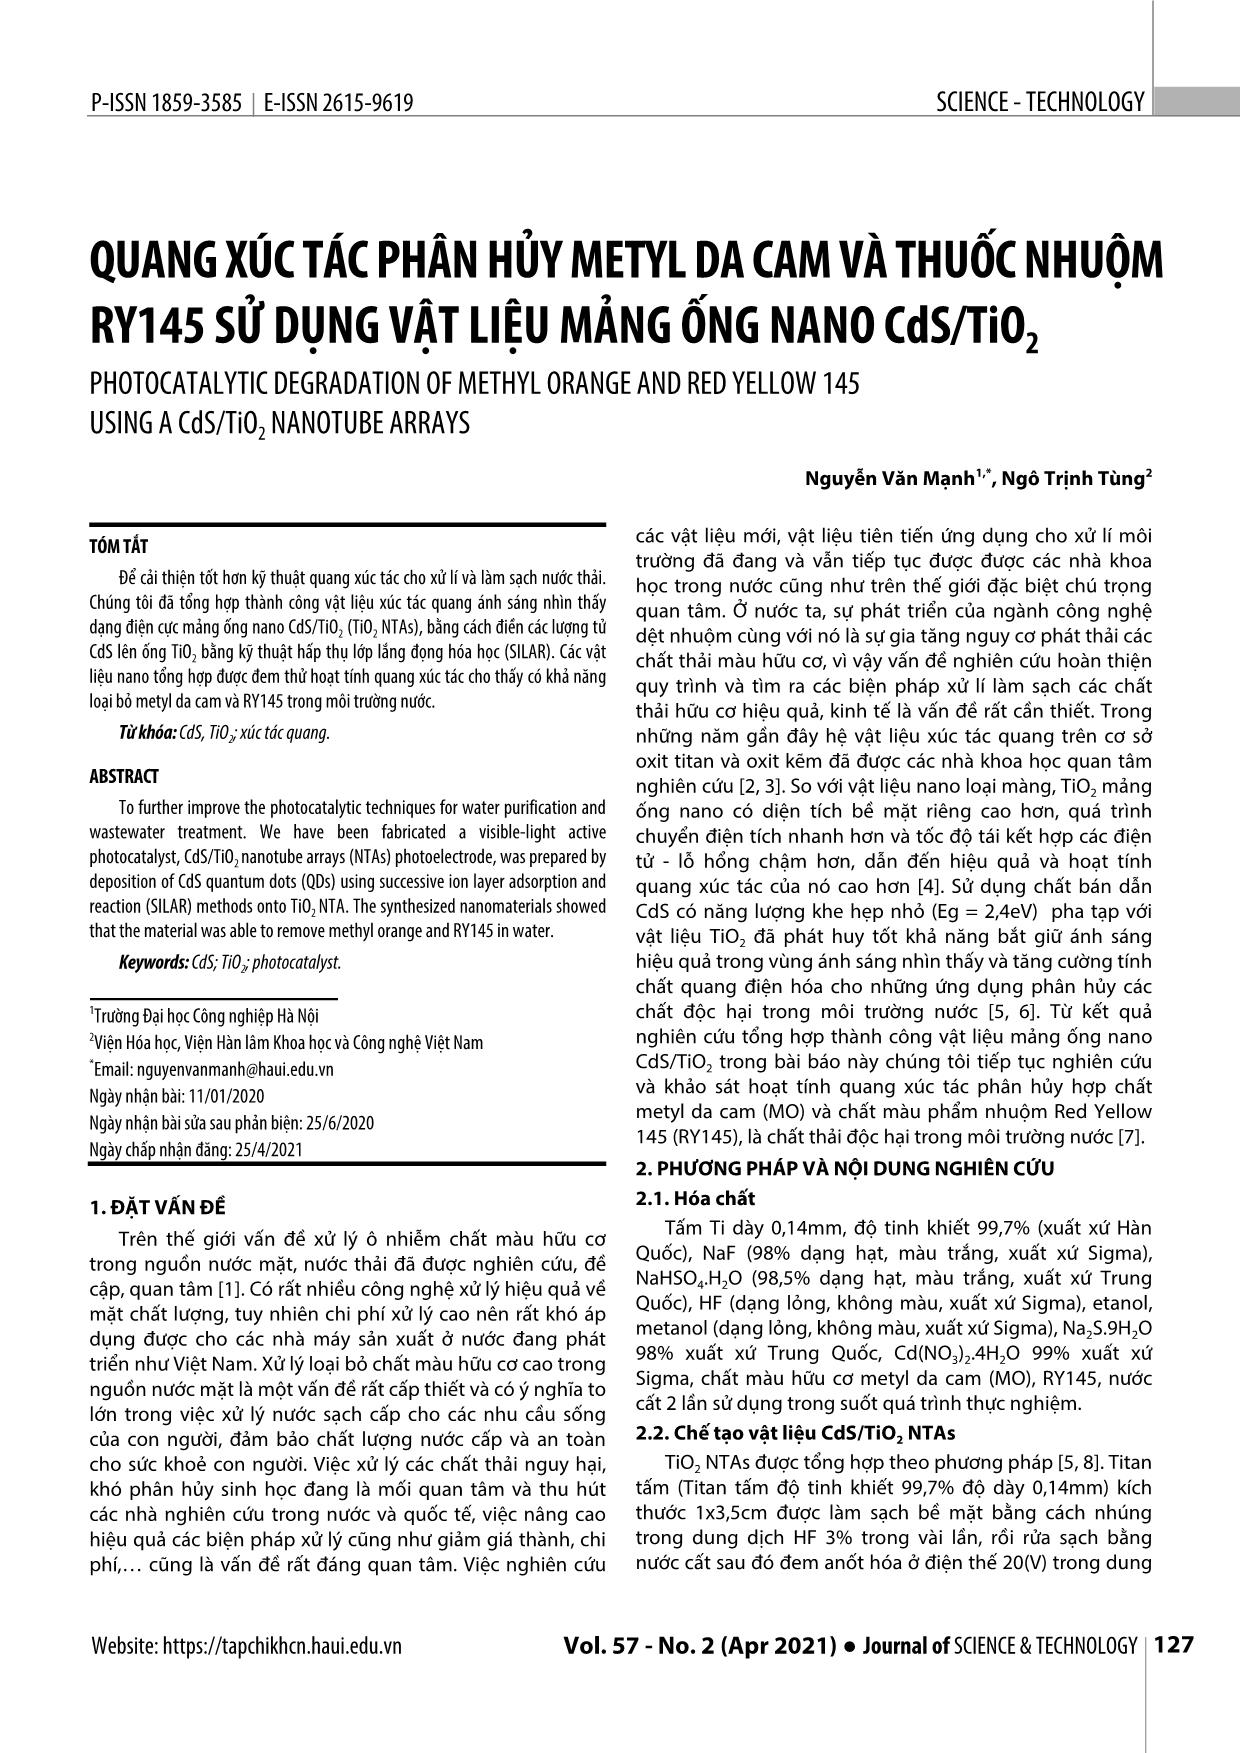 Quang xúc tác phân hủy metyl da cam và thuốc nhuộm RY145 sử dụng vật liệu mảng ống nano CdS/TiO2 trang 1